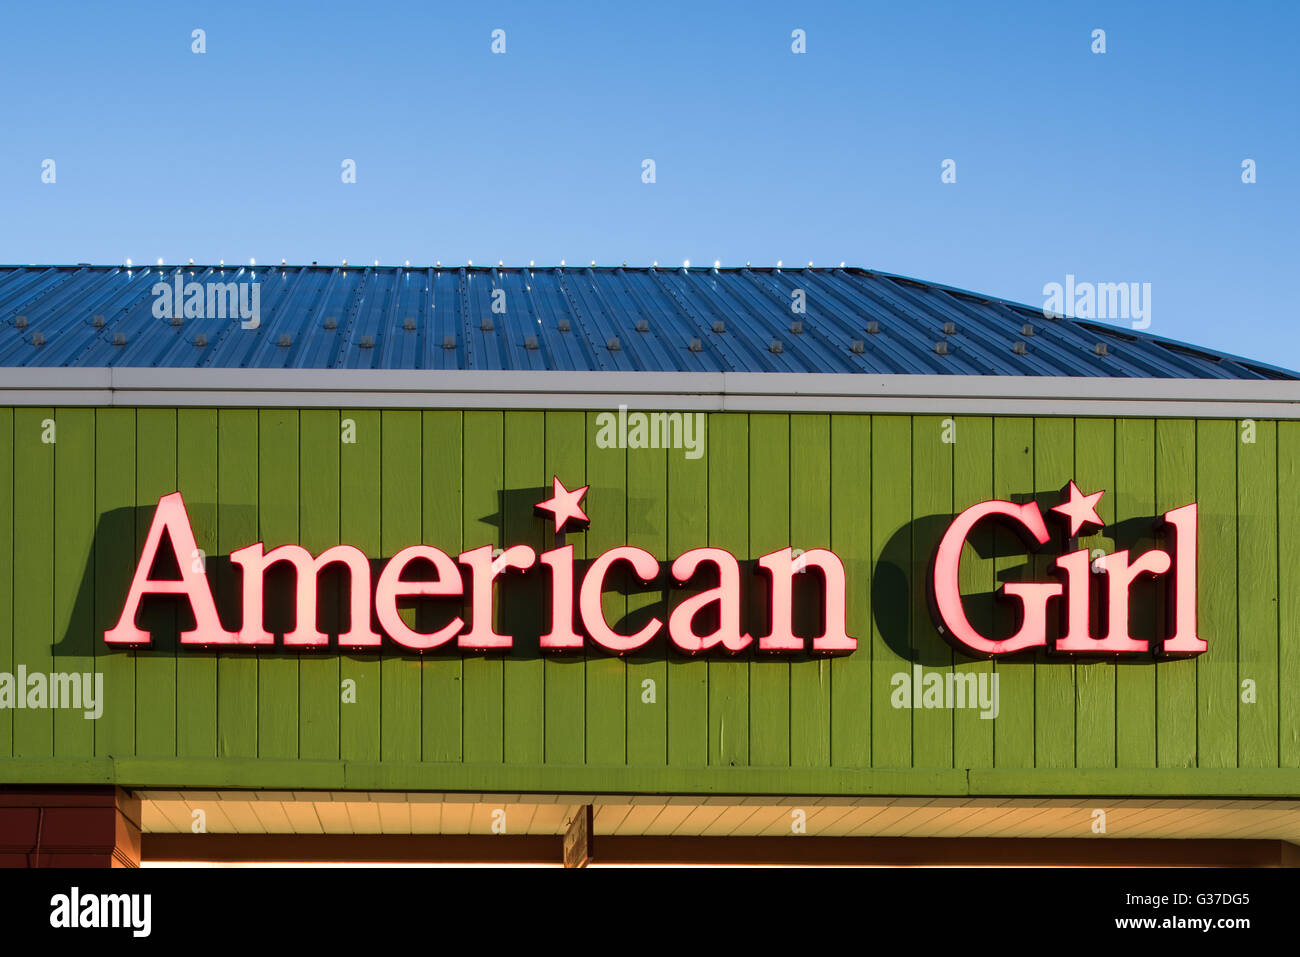 Oshkosh, WI - 5. Juni 2016: American Girl speichern Zeichen nachts beleuchtet Stockfoto